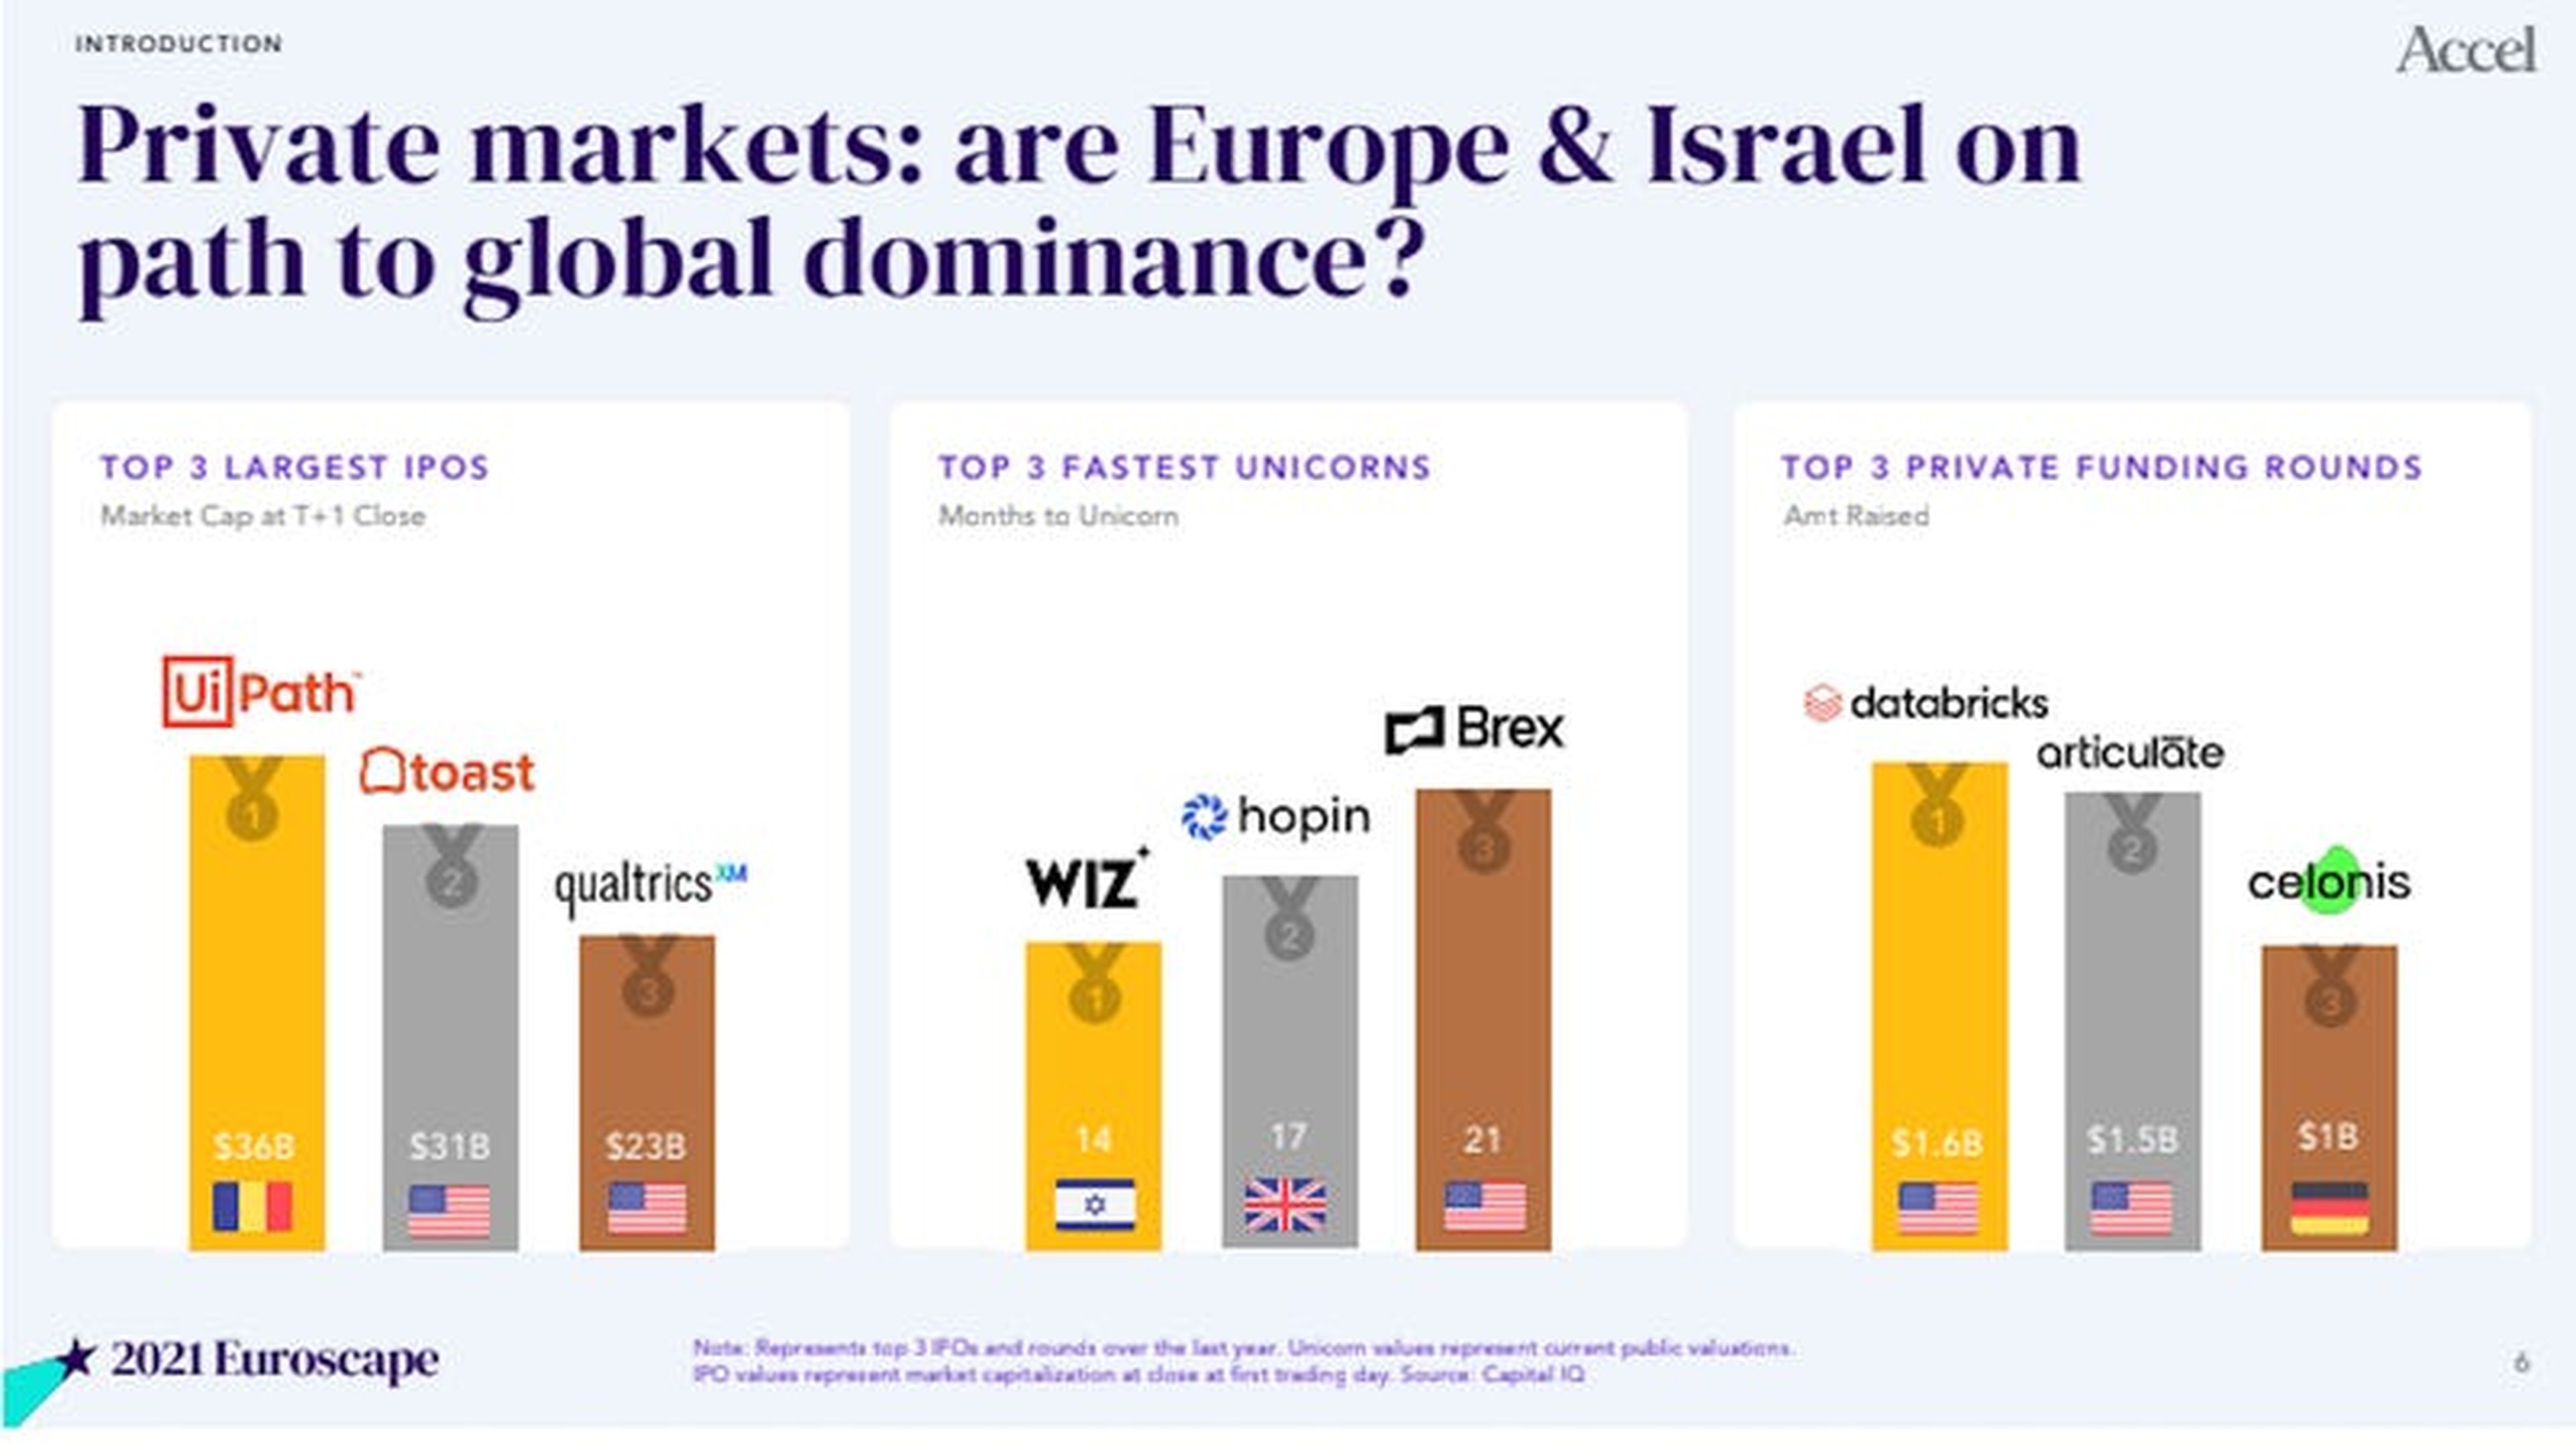 Las startups europeas compiten con las estadounidenses en tamaño de sus OPV, rapidez de crecimiento y cantidad de financiación obtenida.